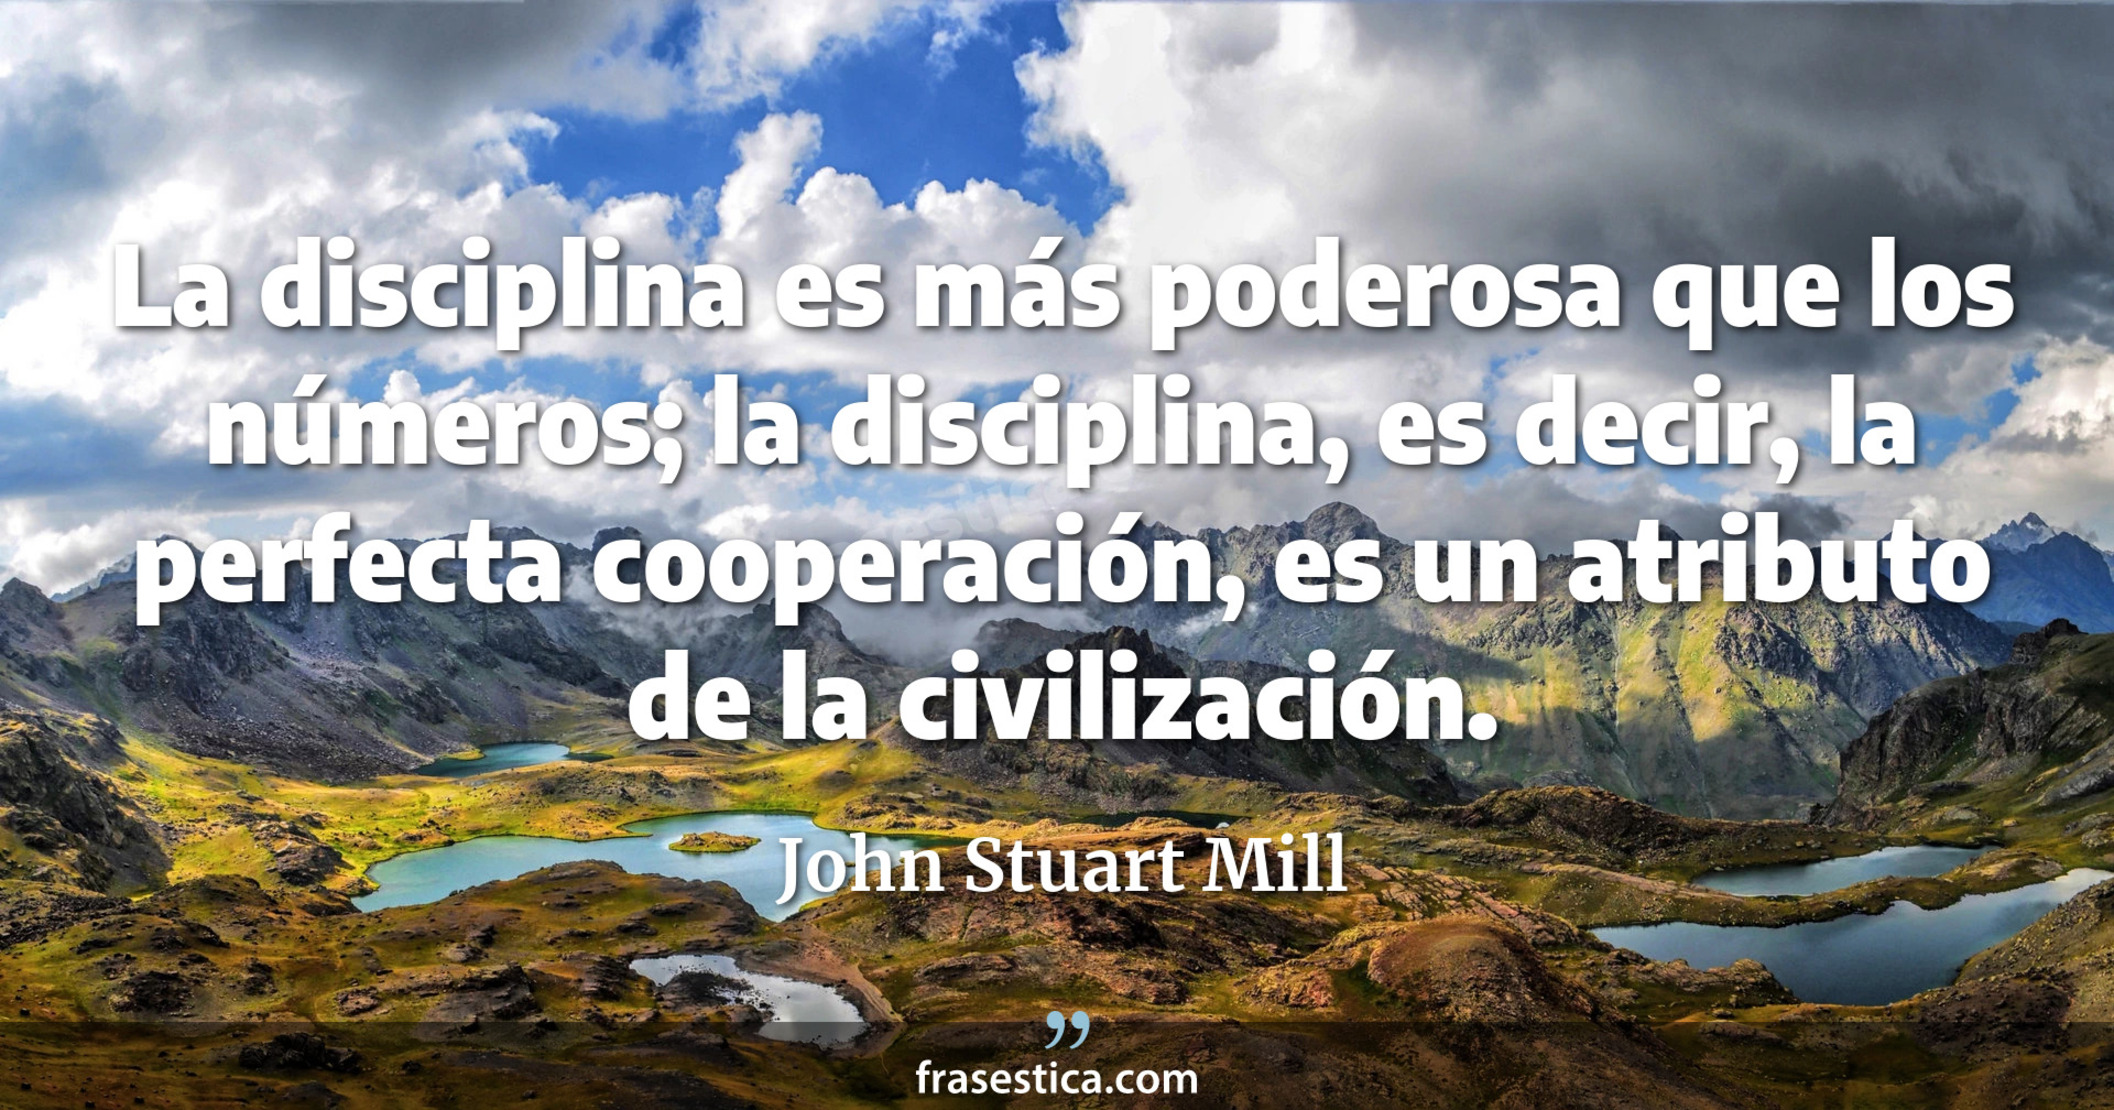 La disciplina es más poderosa que los números; la disciplina, es decir, la perfecta cooperación, es un atributo de la civilización. - John Stuart Mill